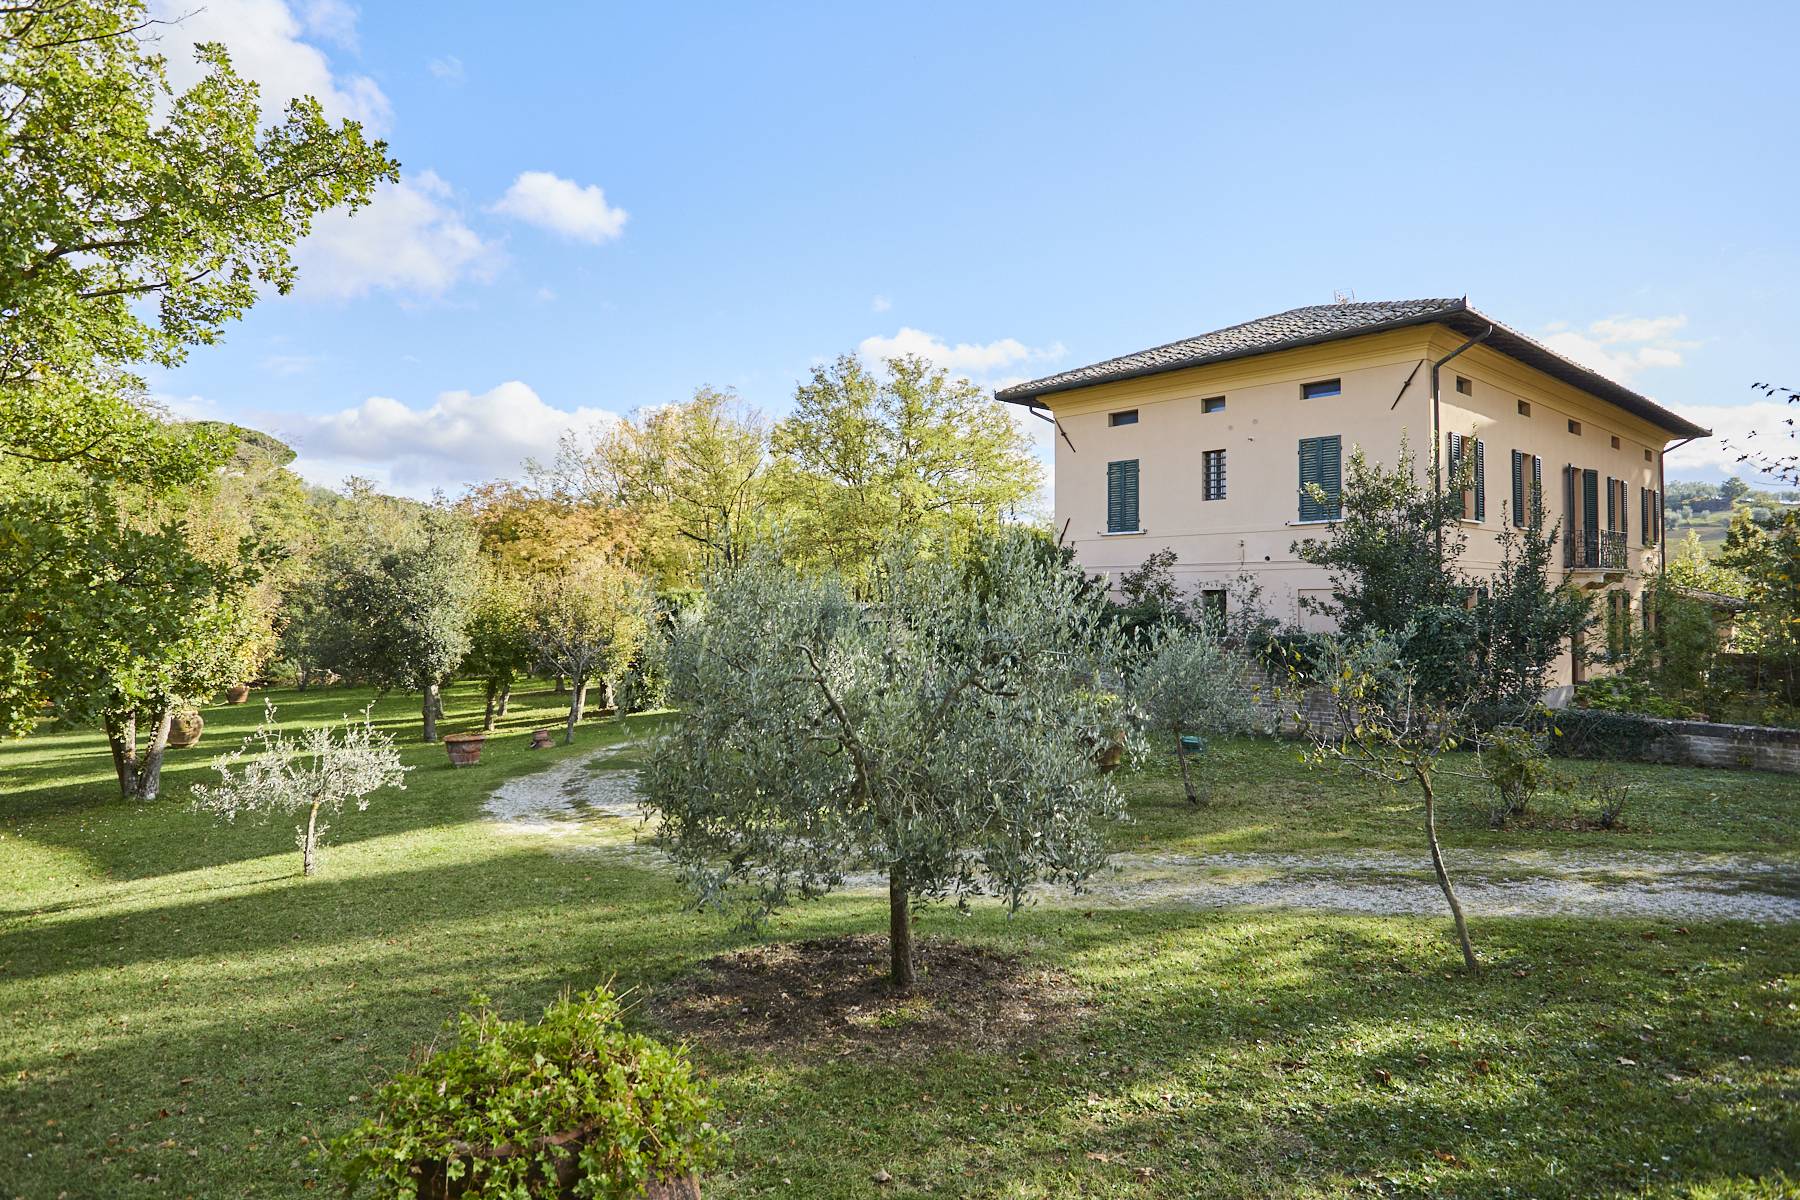 Villa in Vendita a Montepulciano: 5 locali, 860 mq - Foto 4